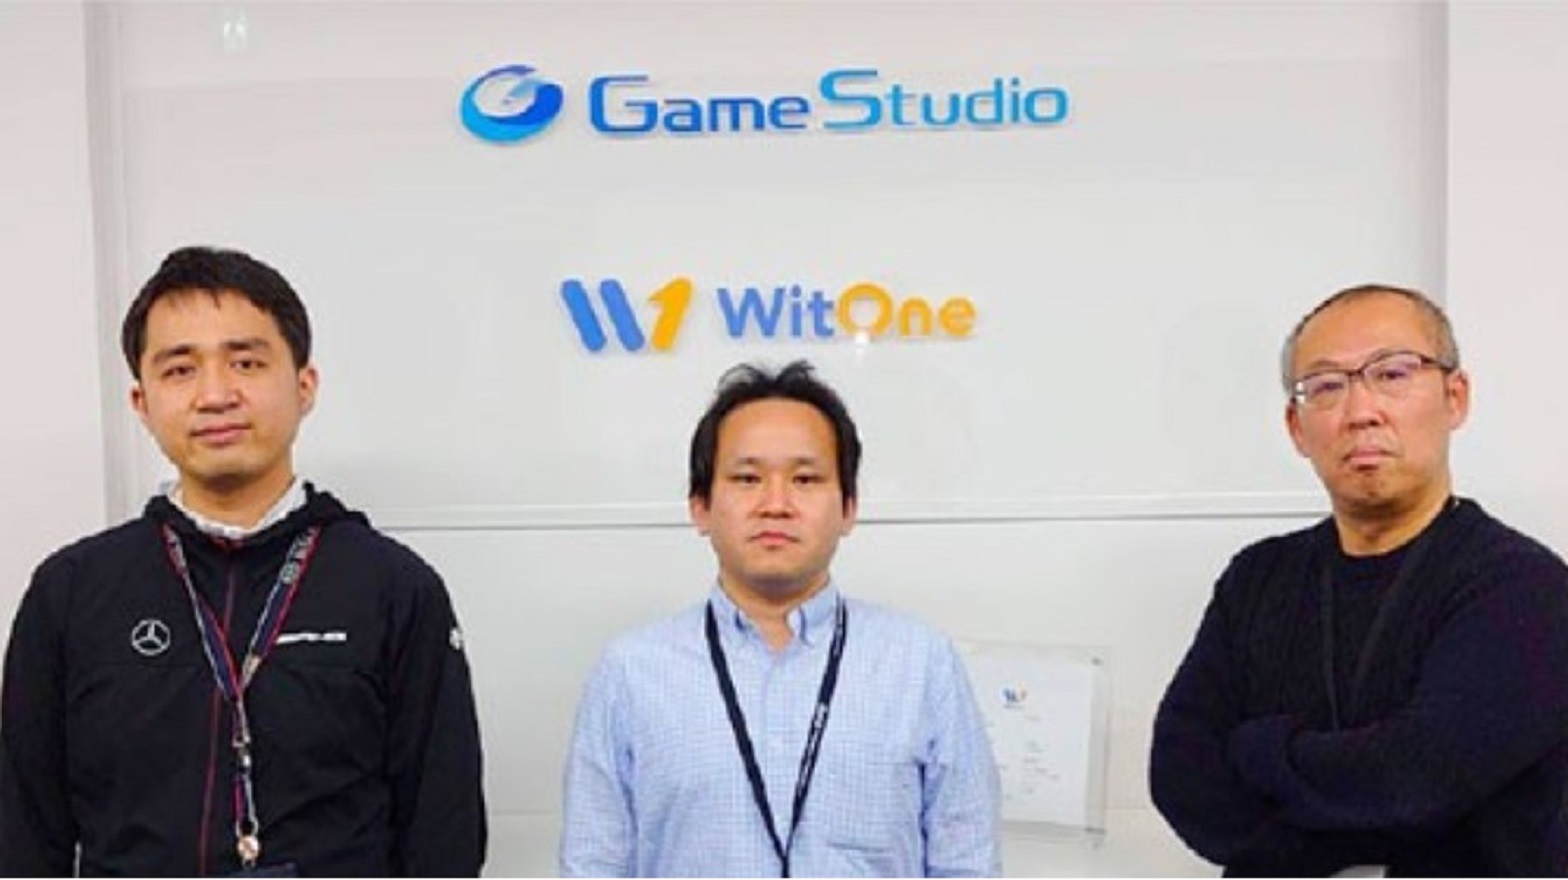 members of Game Studio Inc